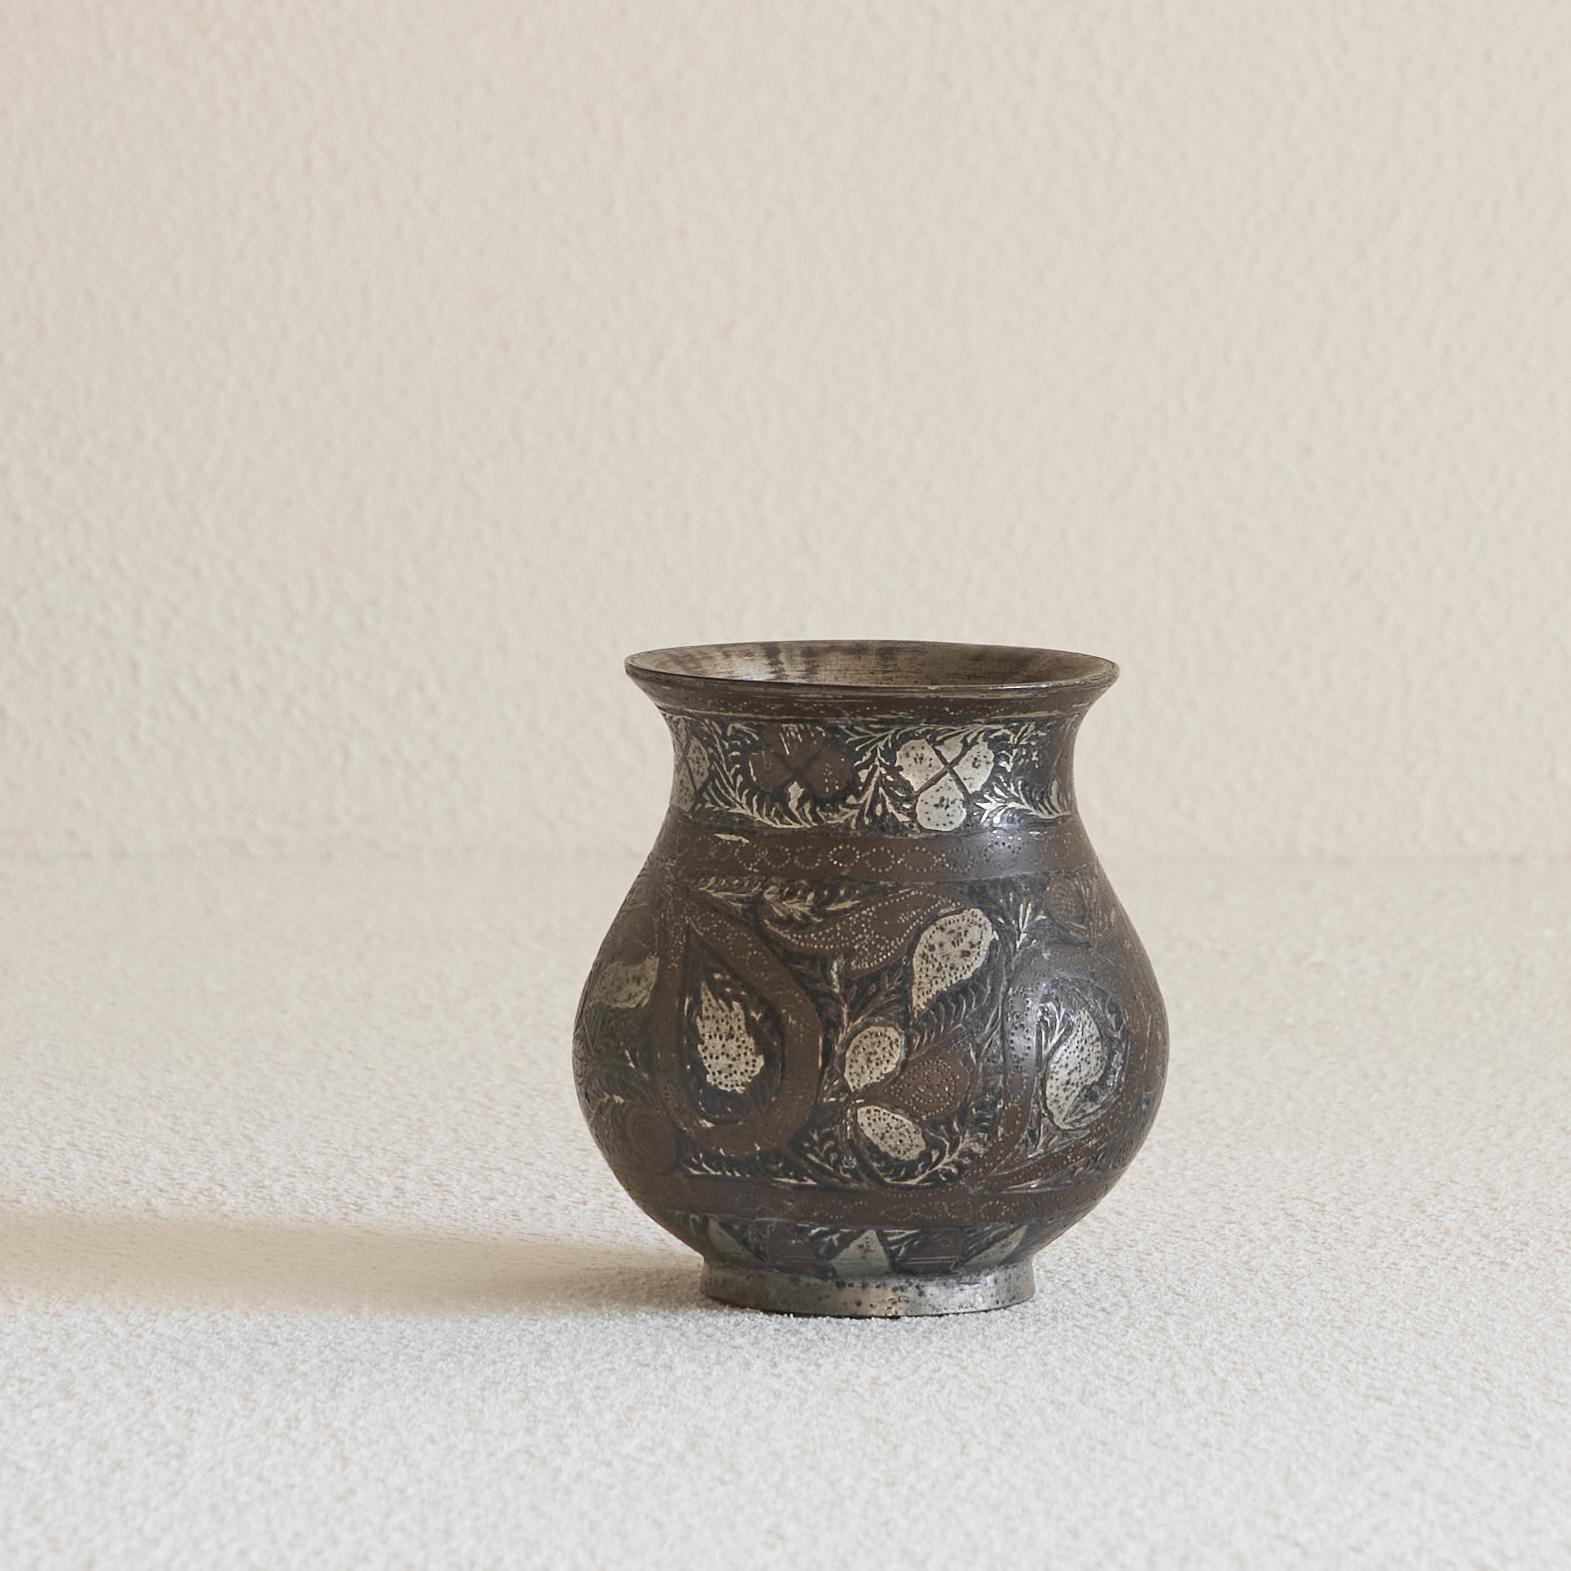 Petit vase ancien de forme piriforme 'Bidri'.

Magnifique petit vase de style 